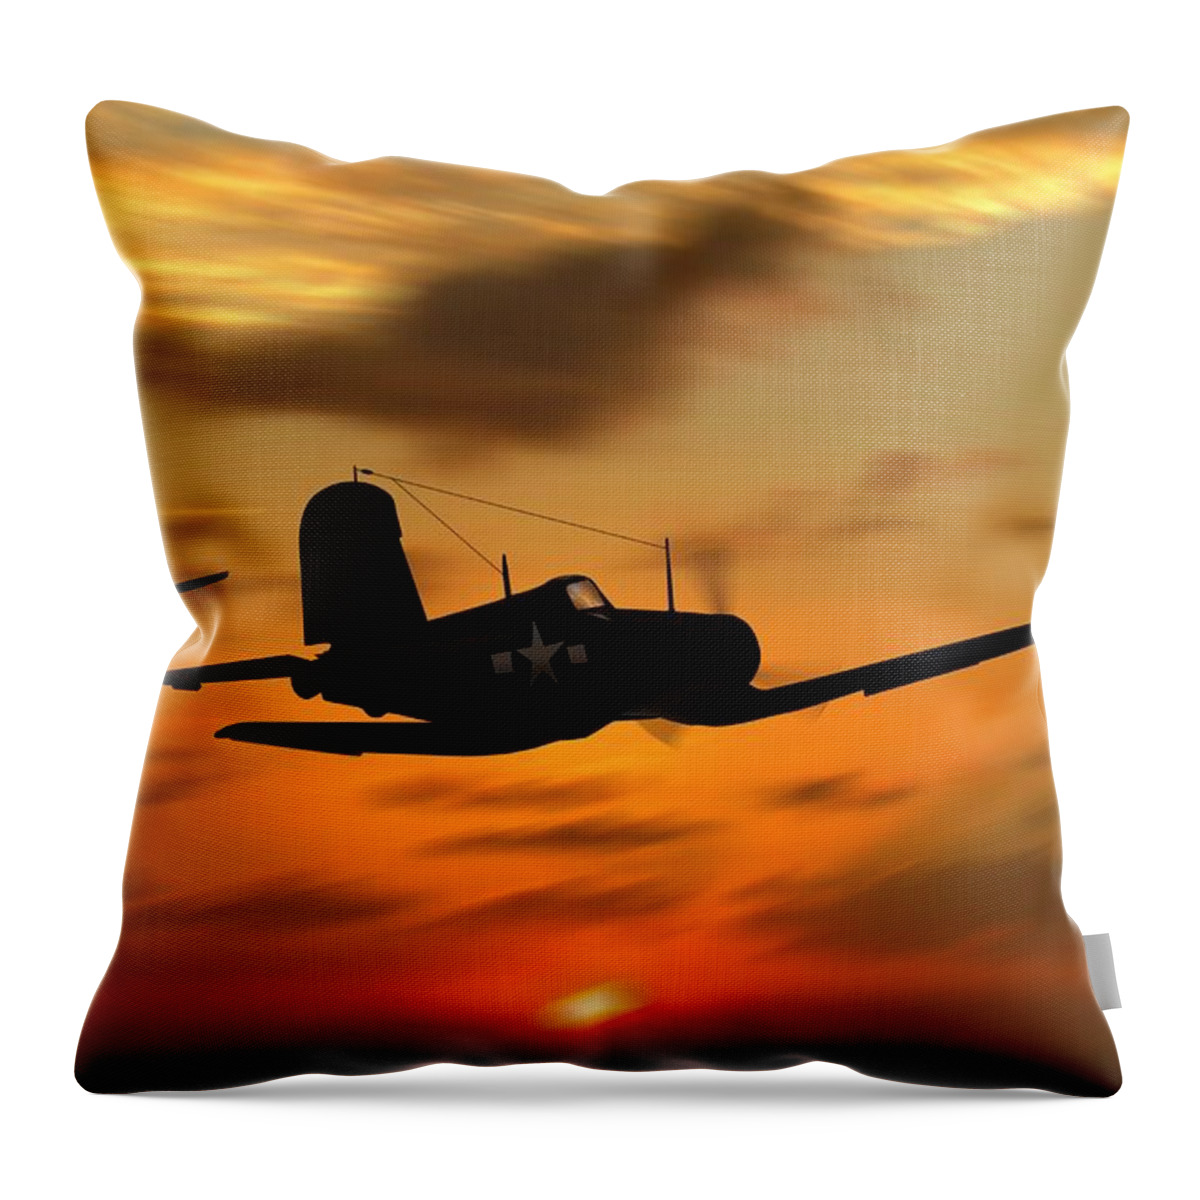 Chance Vought Corsair Throw Pillow featuring the digital art Vought Corsairs at sunset by John Wills